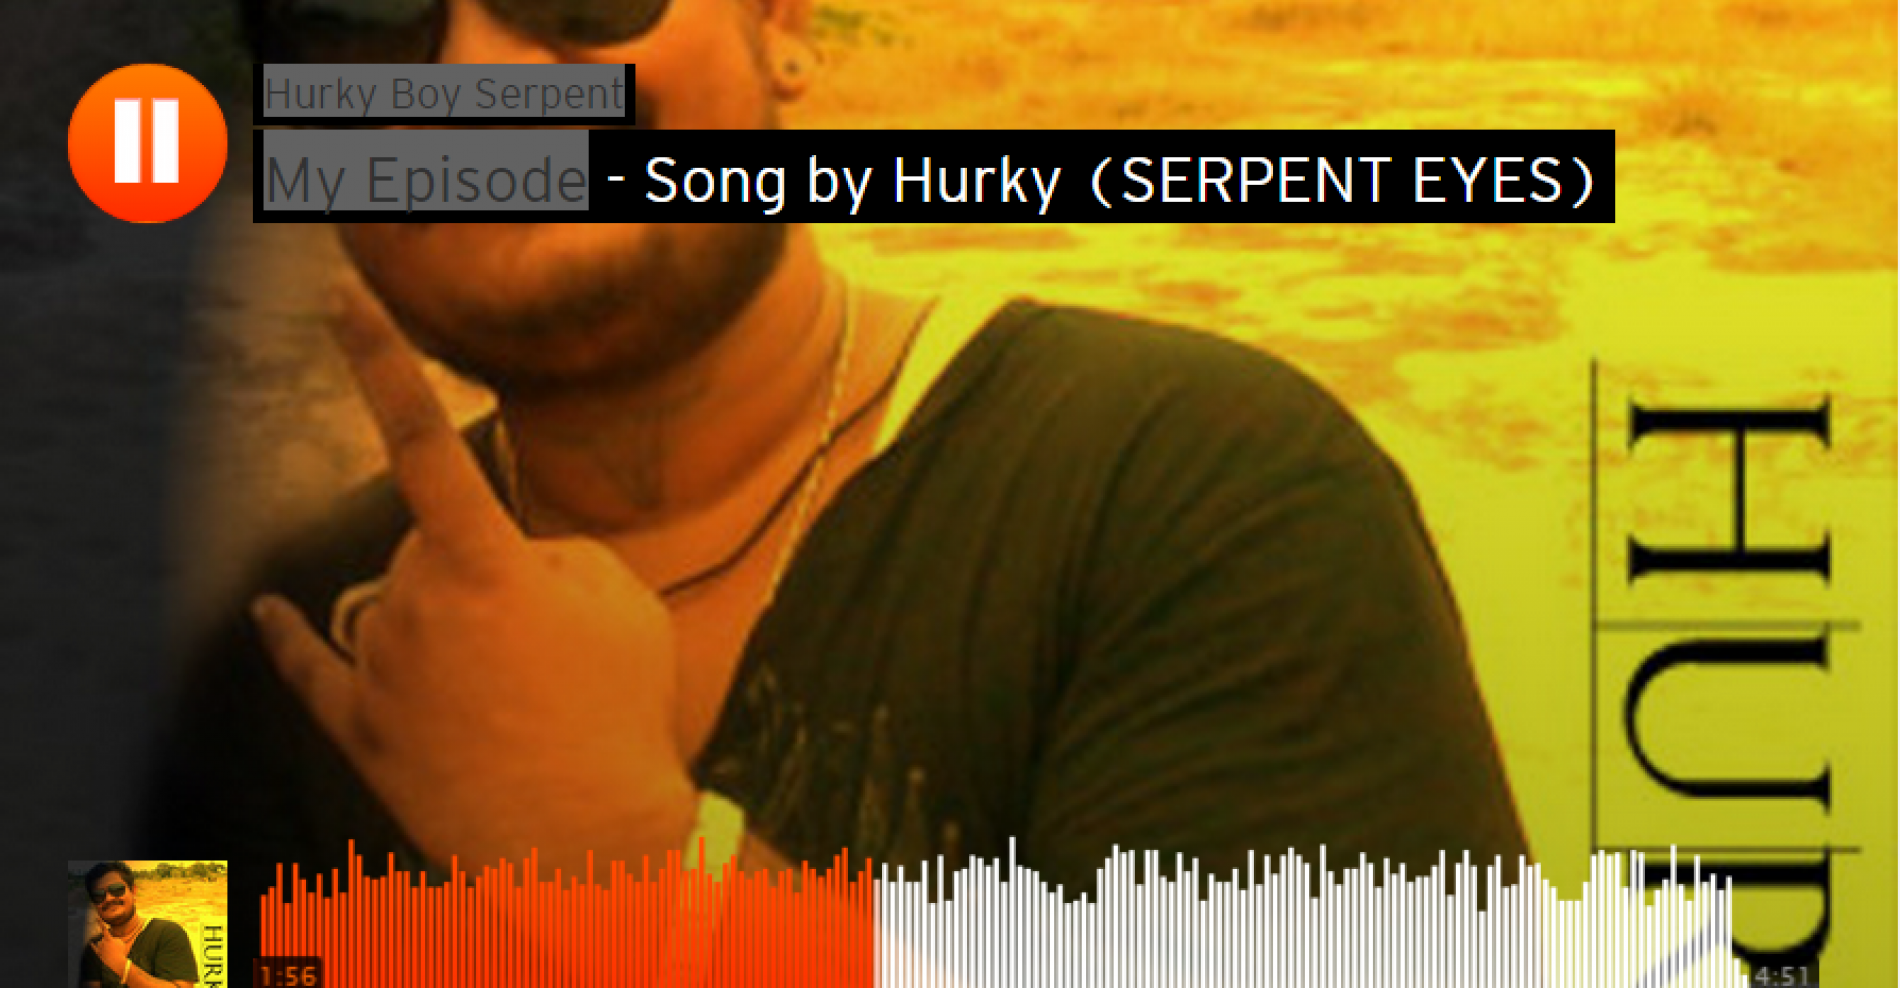 Hurky Boy Serpent – My Episode